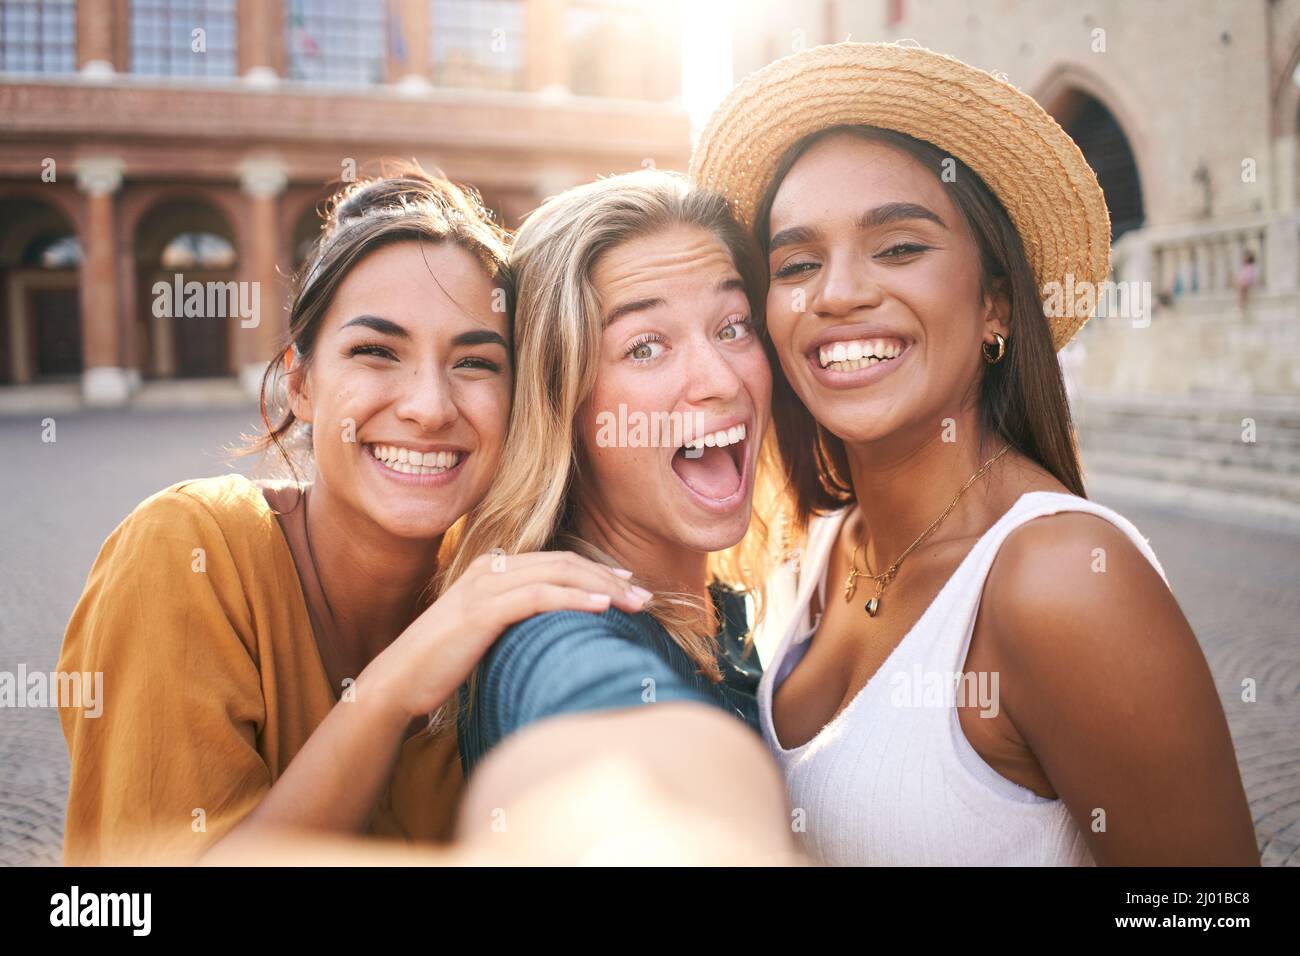 Drei lustige schöne Mädchen Freunde in Sommerkleidung nehmen ein Selfie im Freien in der touristischen Stadt Stadtzentrum Stockfoto